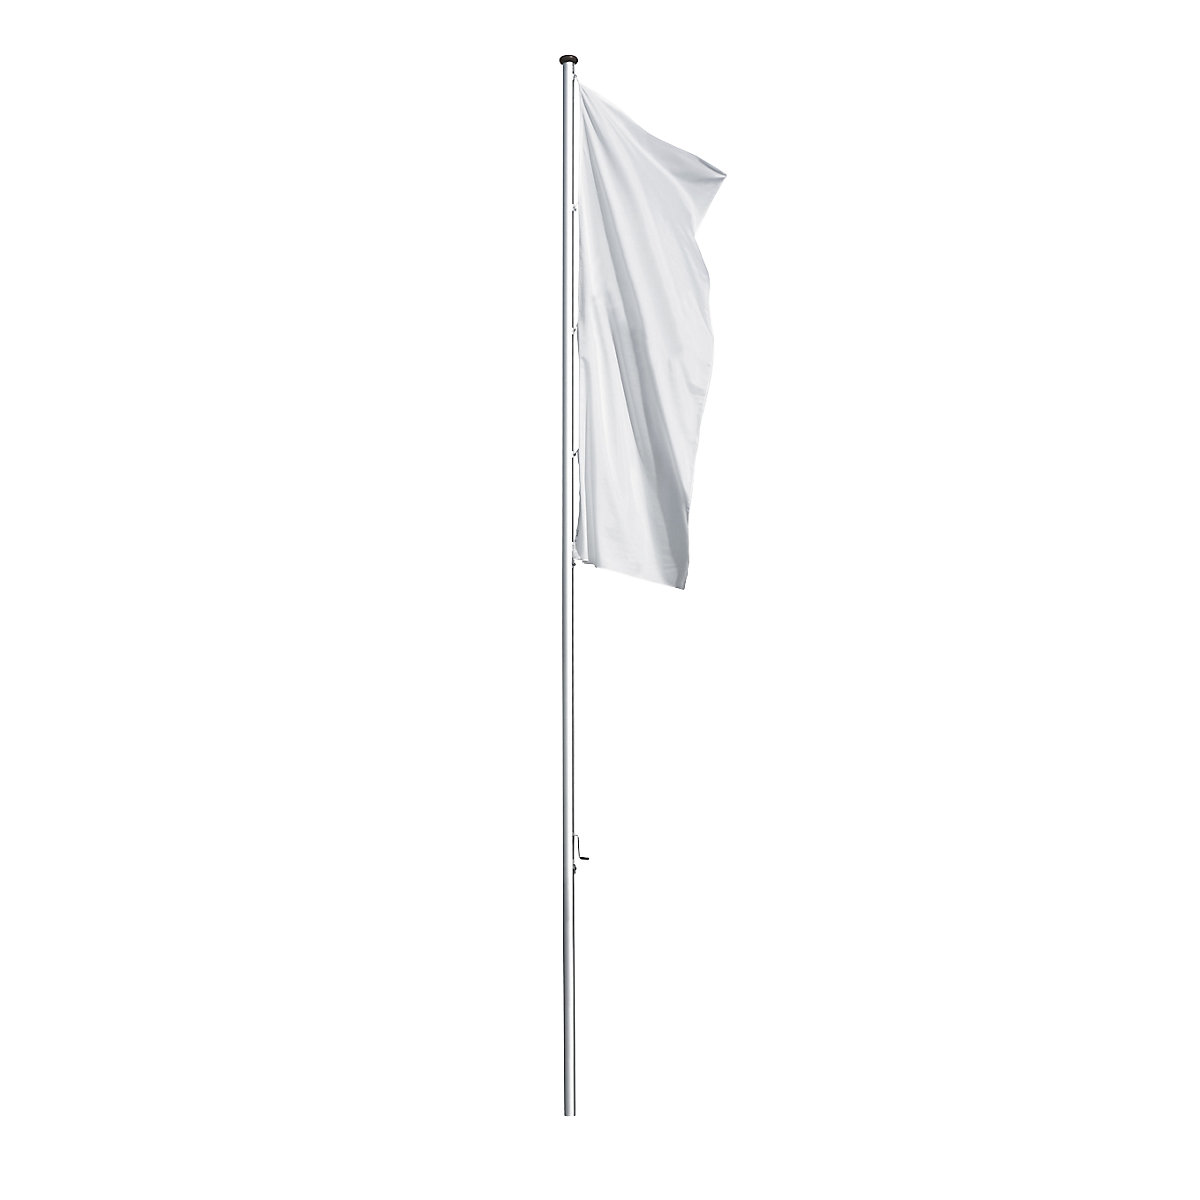 Mannus – Maszt flagowy z aluminium PRESTIGE, bez wysięgnika, wys. nad podłożem 6 m, Ø 75 mm